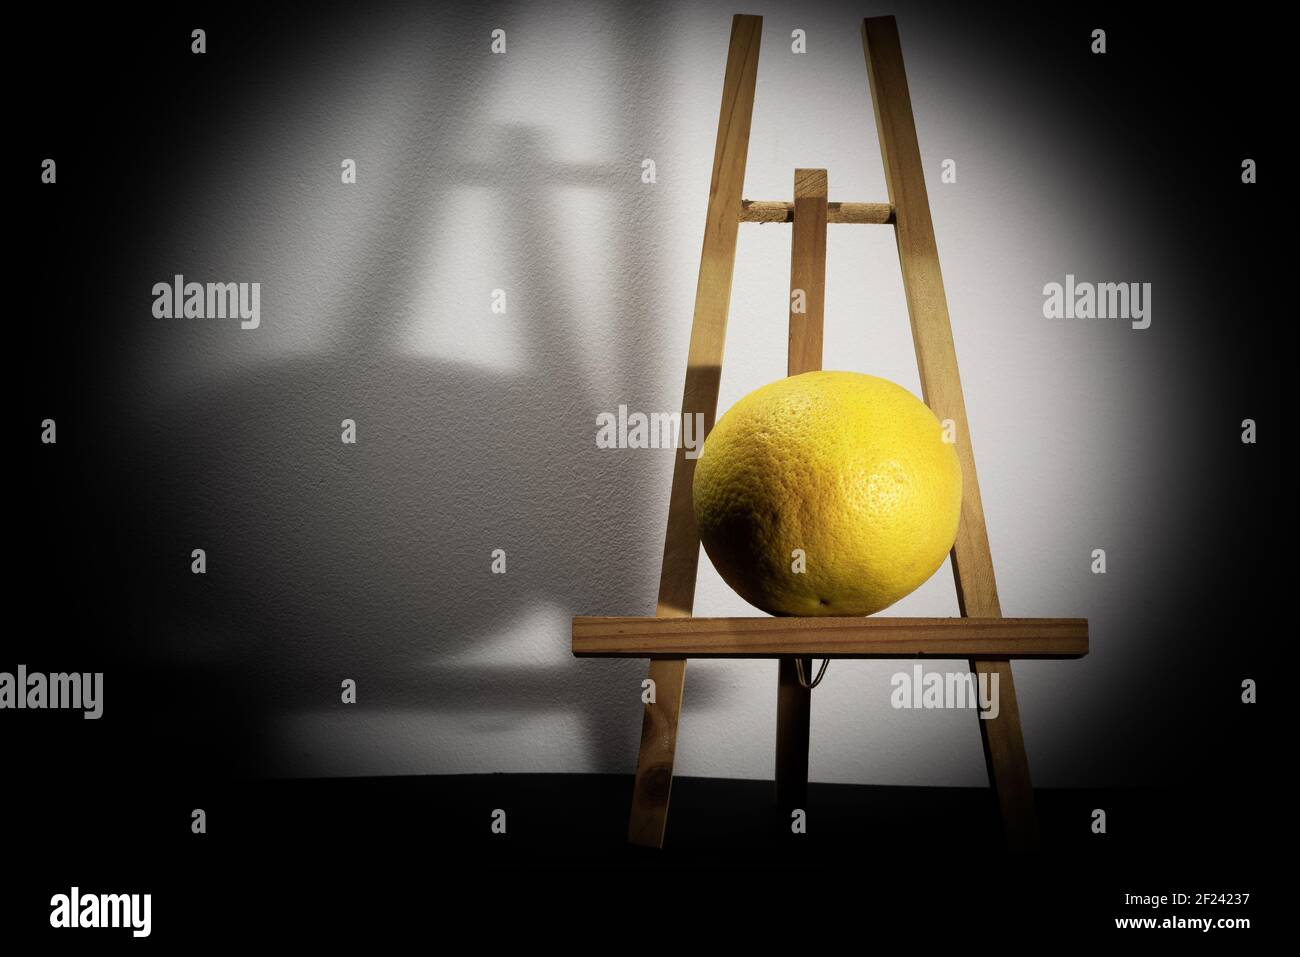 Retrato de un limón en una caballete. Concepto de vida quieto moderna. Foto de stock